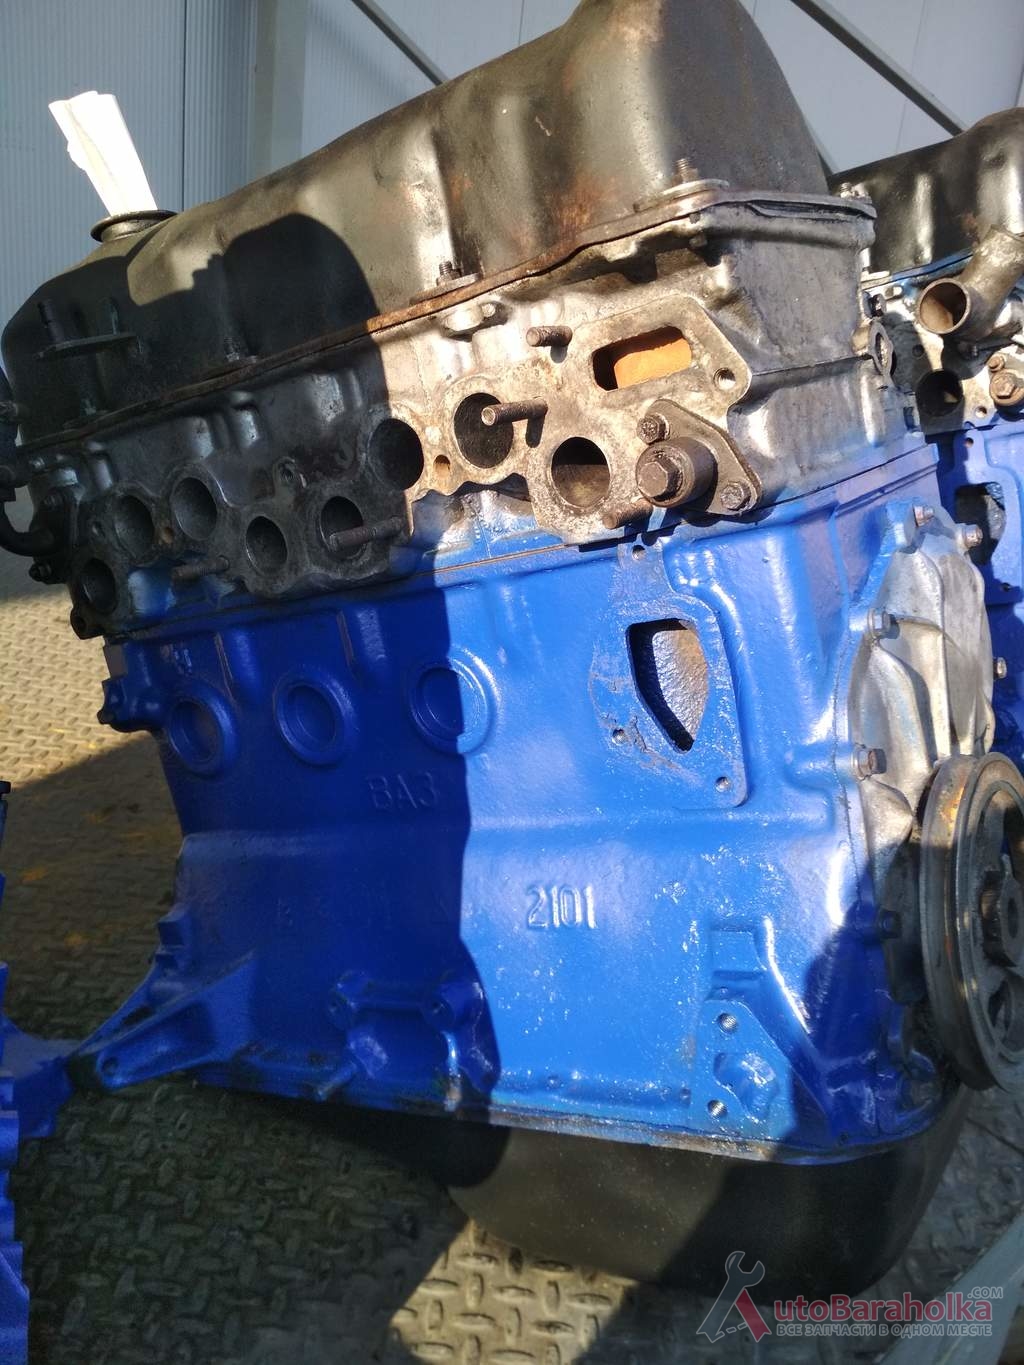 Продам Двигатель ВАЗ 2101 2103 21011 2106 2121 21213 из Словакии. проверенный. высокая компрессия. Гарантия Харьков 